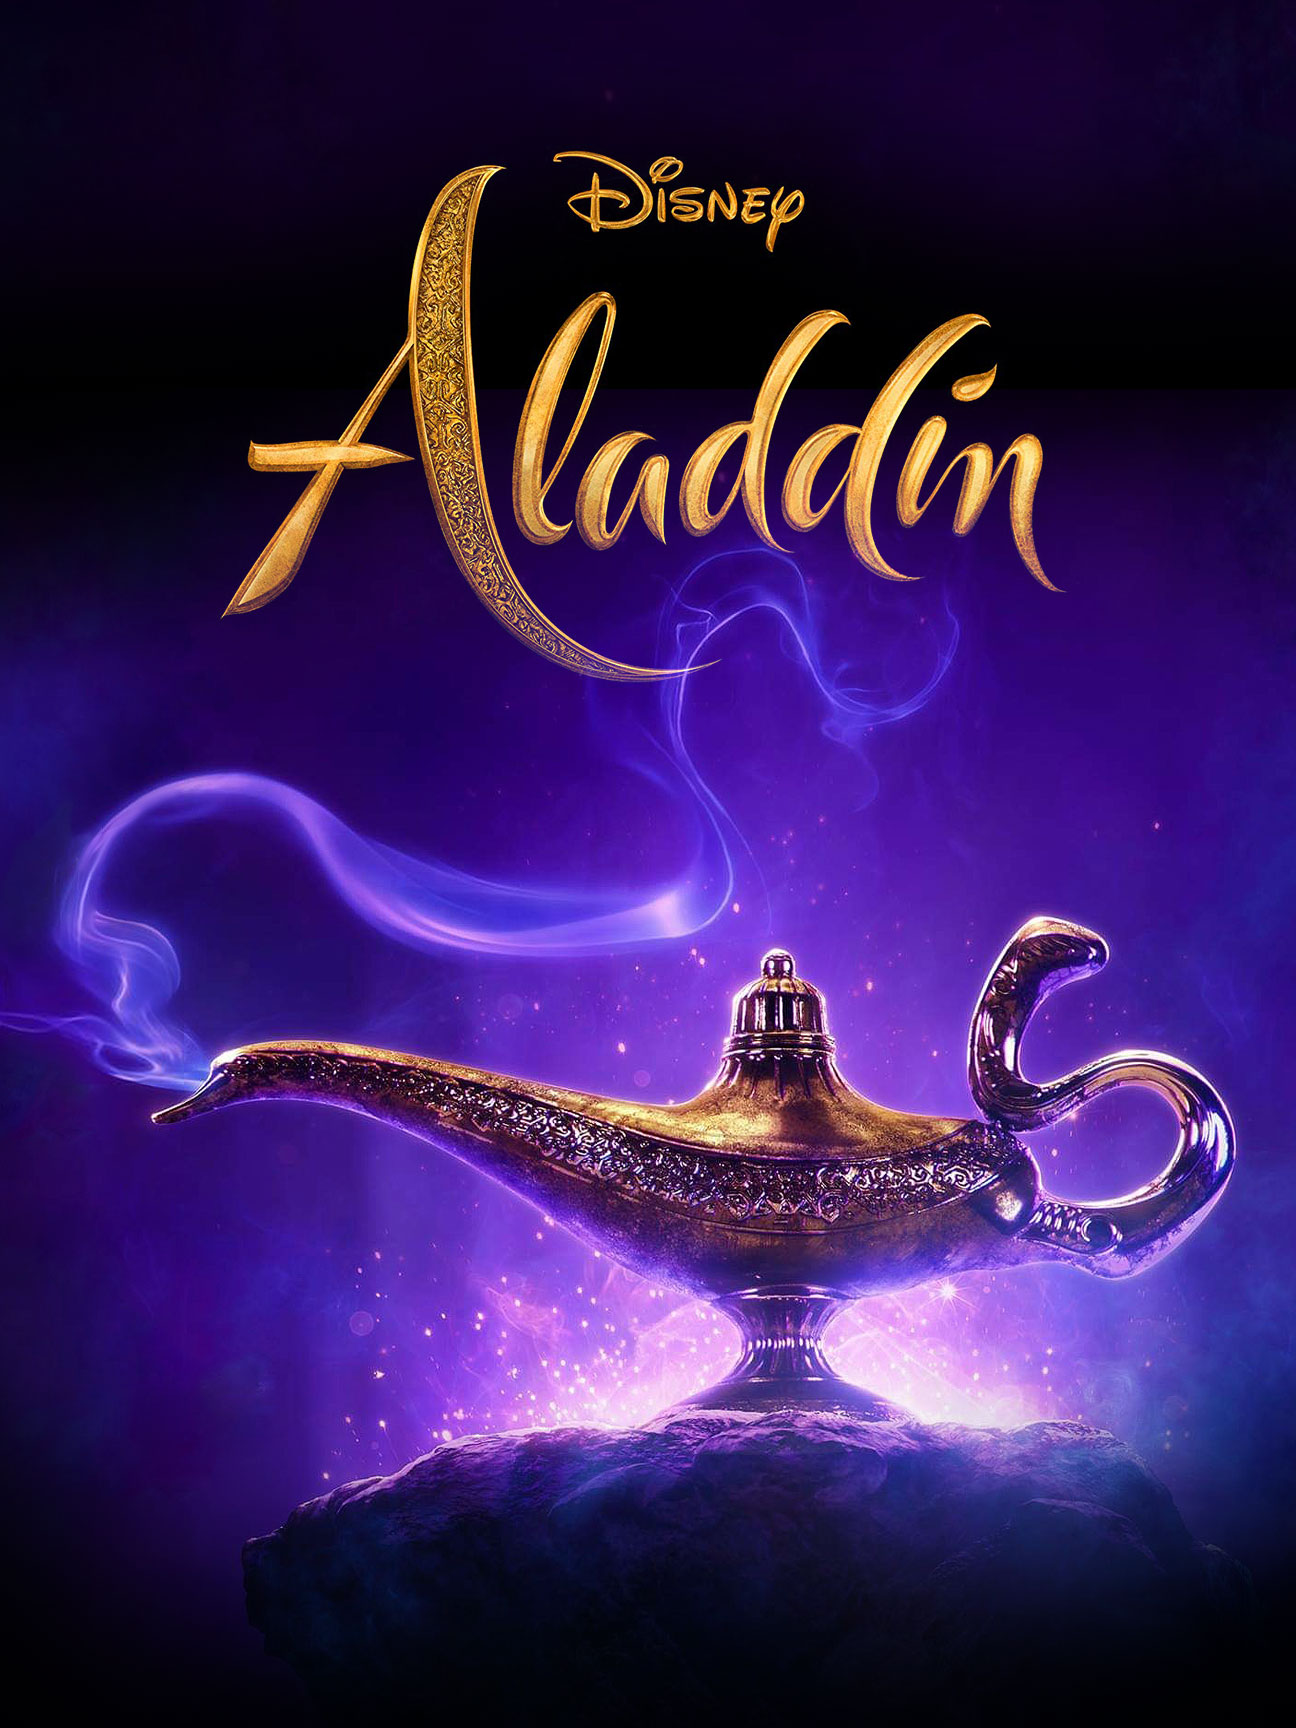 aladdin rubbing lamp 2019